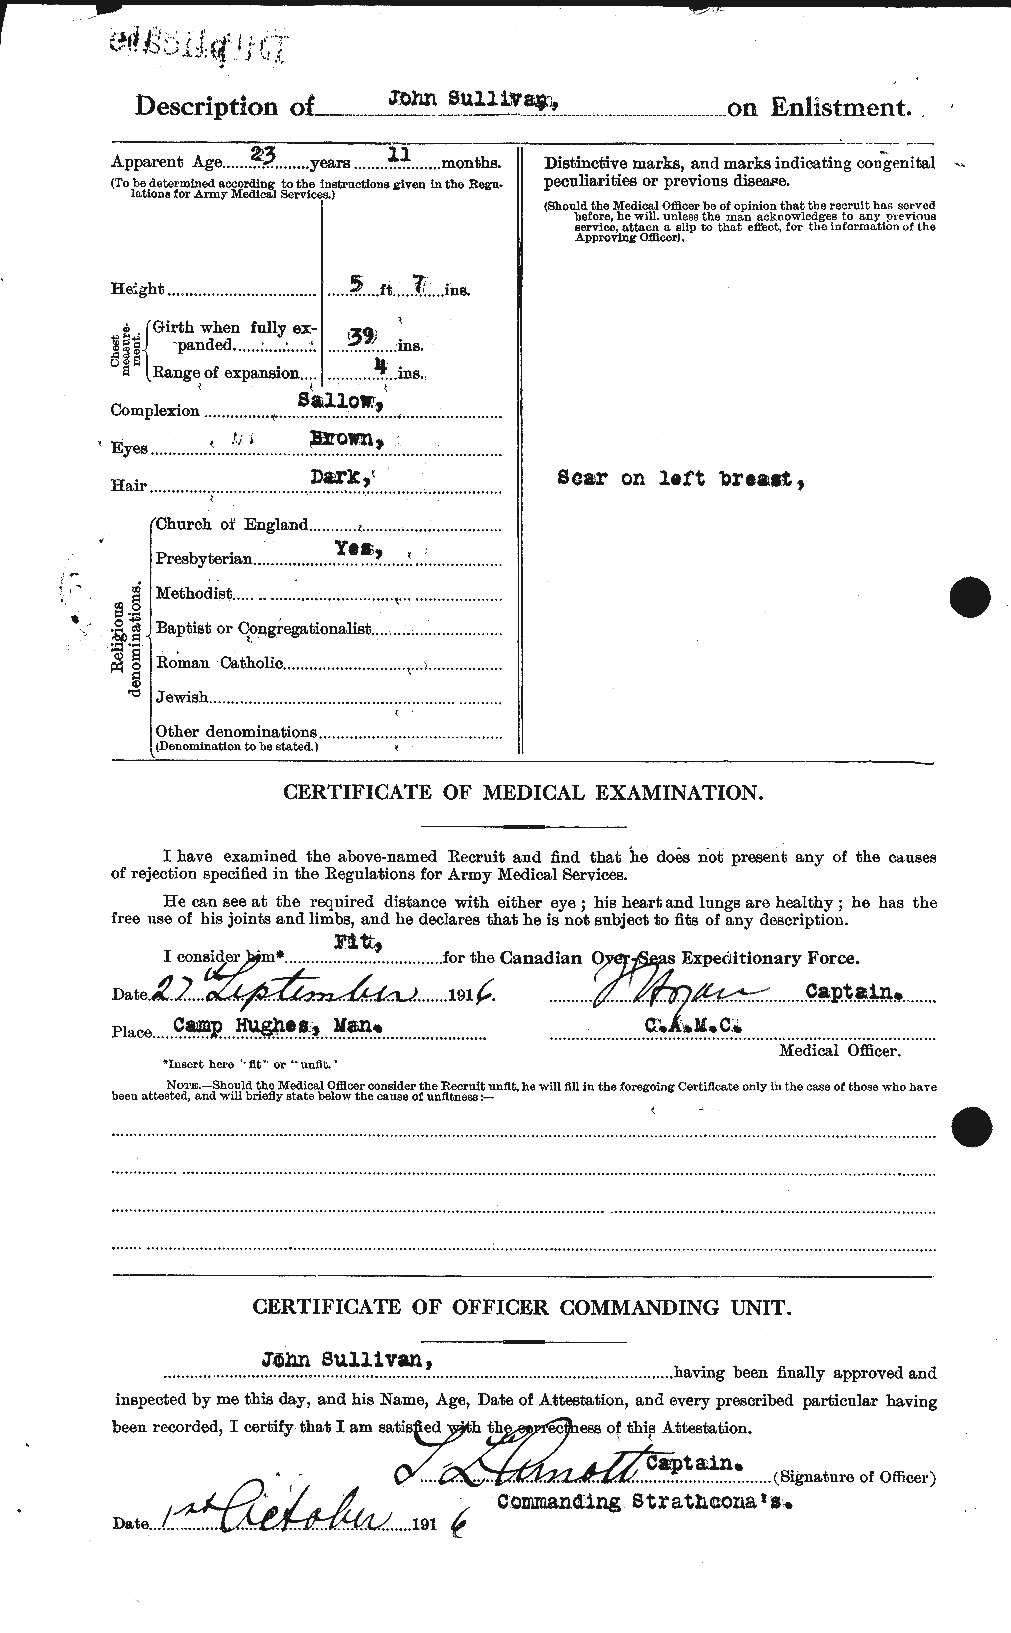 Dossiers du Personnel de la Première Guerre mondiale - CEC 122226b